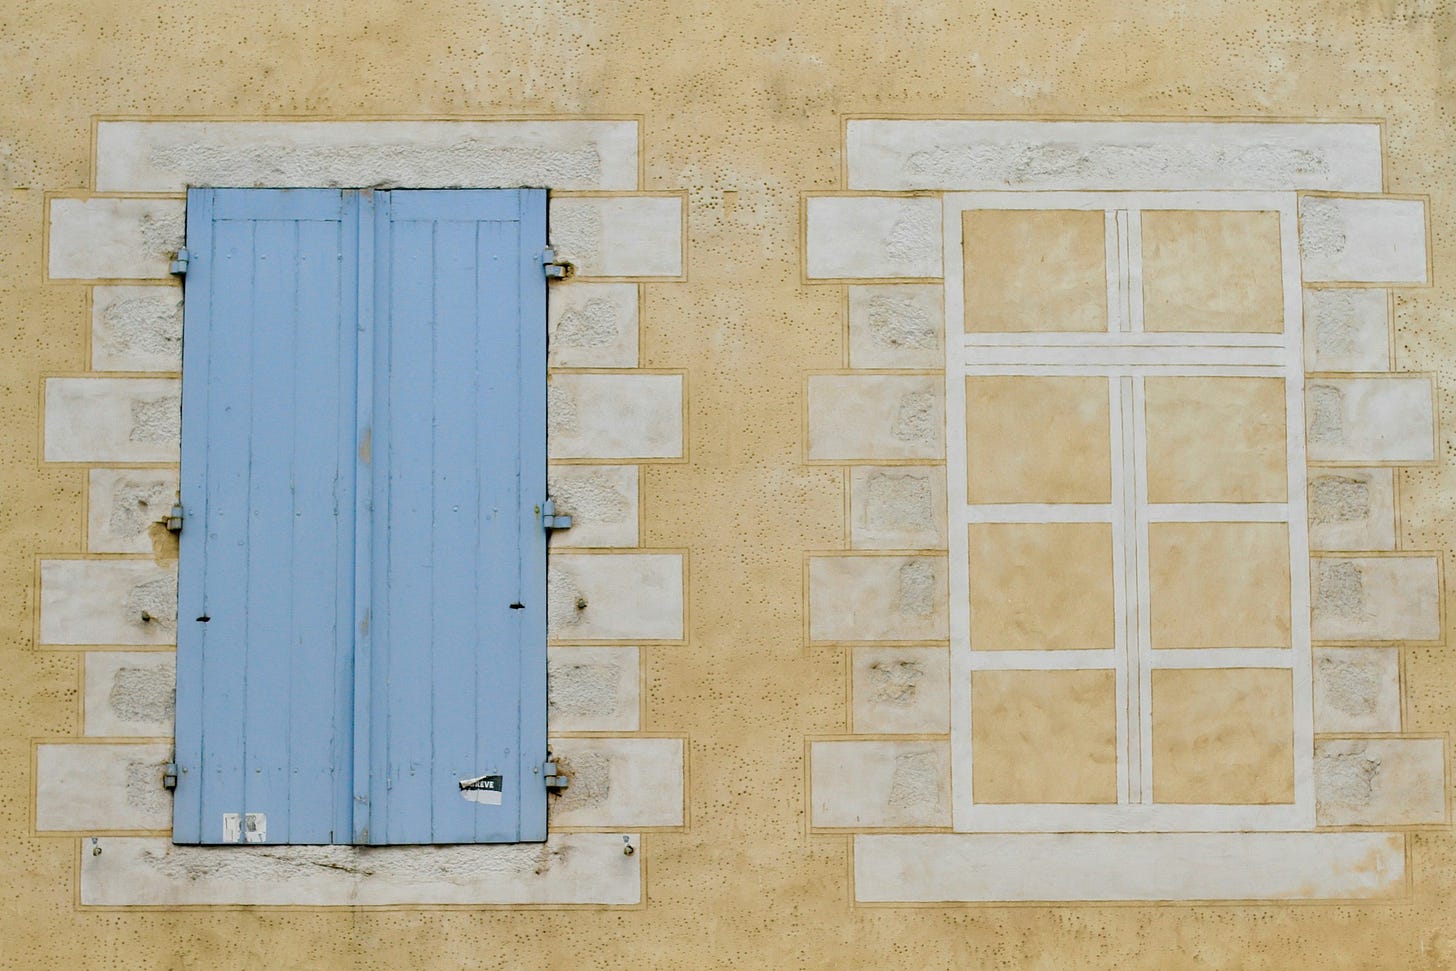 Parete esterna di un edificio di color giallino. Vi compaiono due finestre: a destra una finestra disegnata in bianco, con lo sfondo giallino del muro; a sinistra una finestra chiusa da imposte di legno color azzurrino.